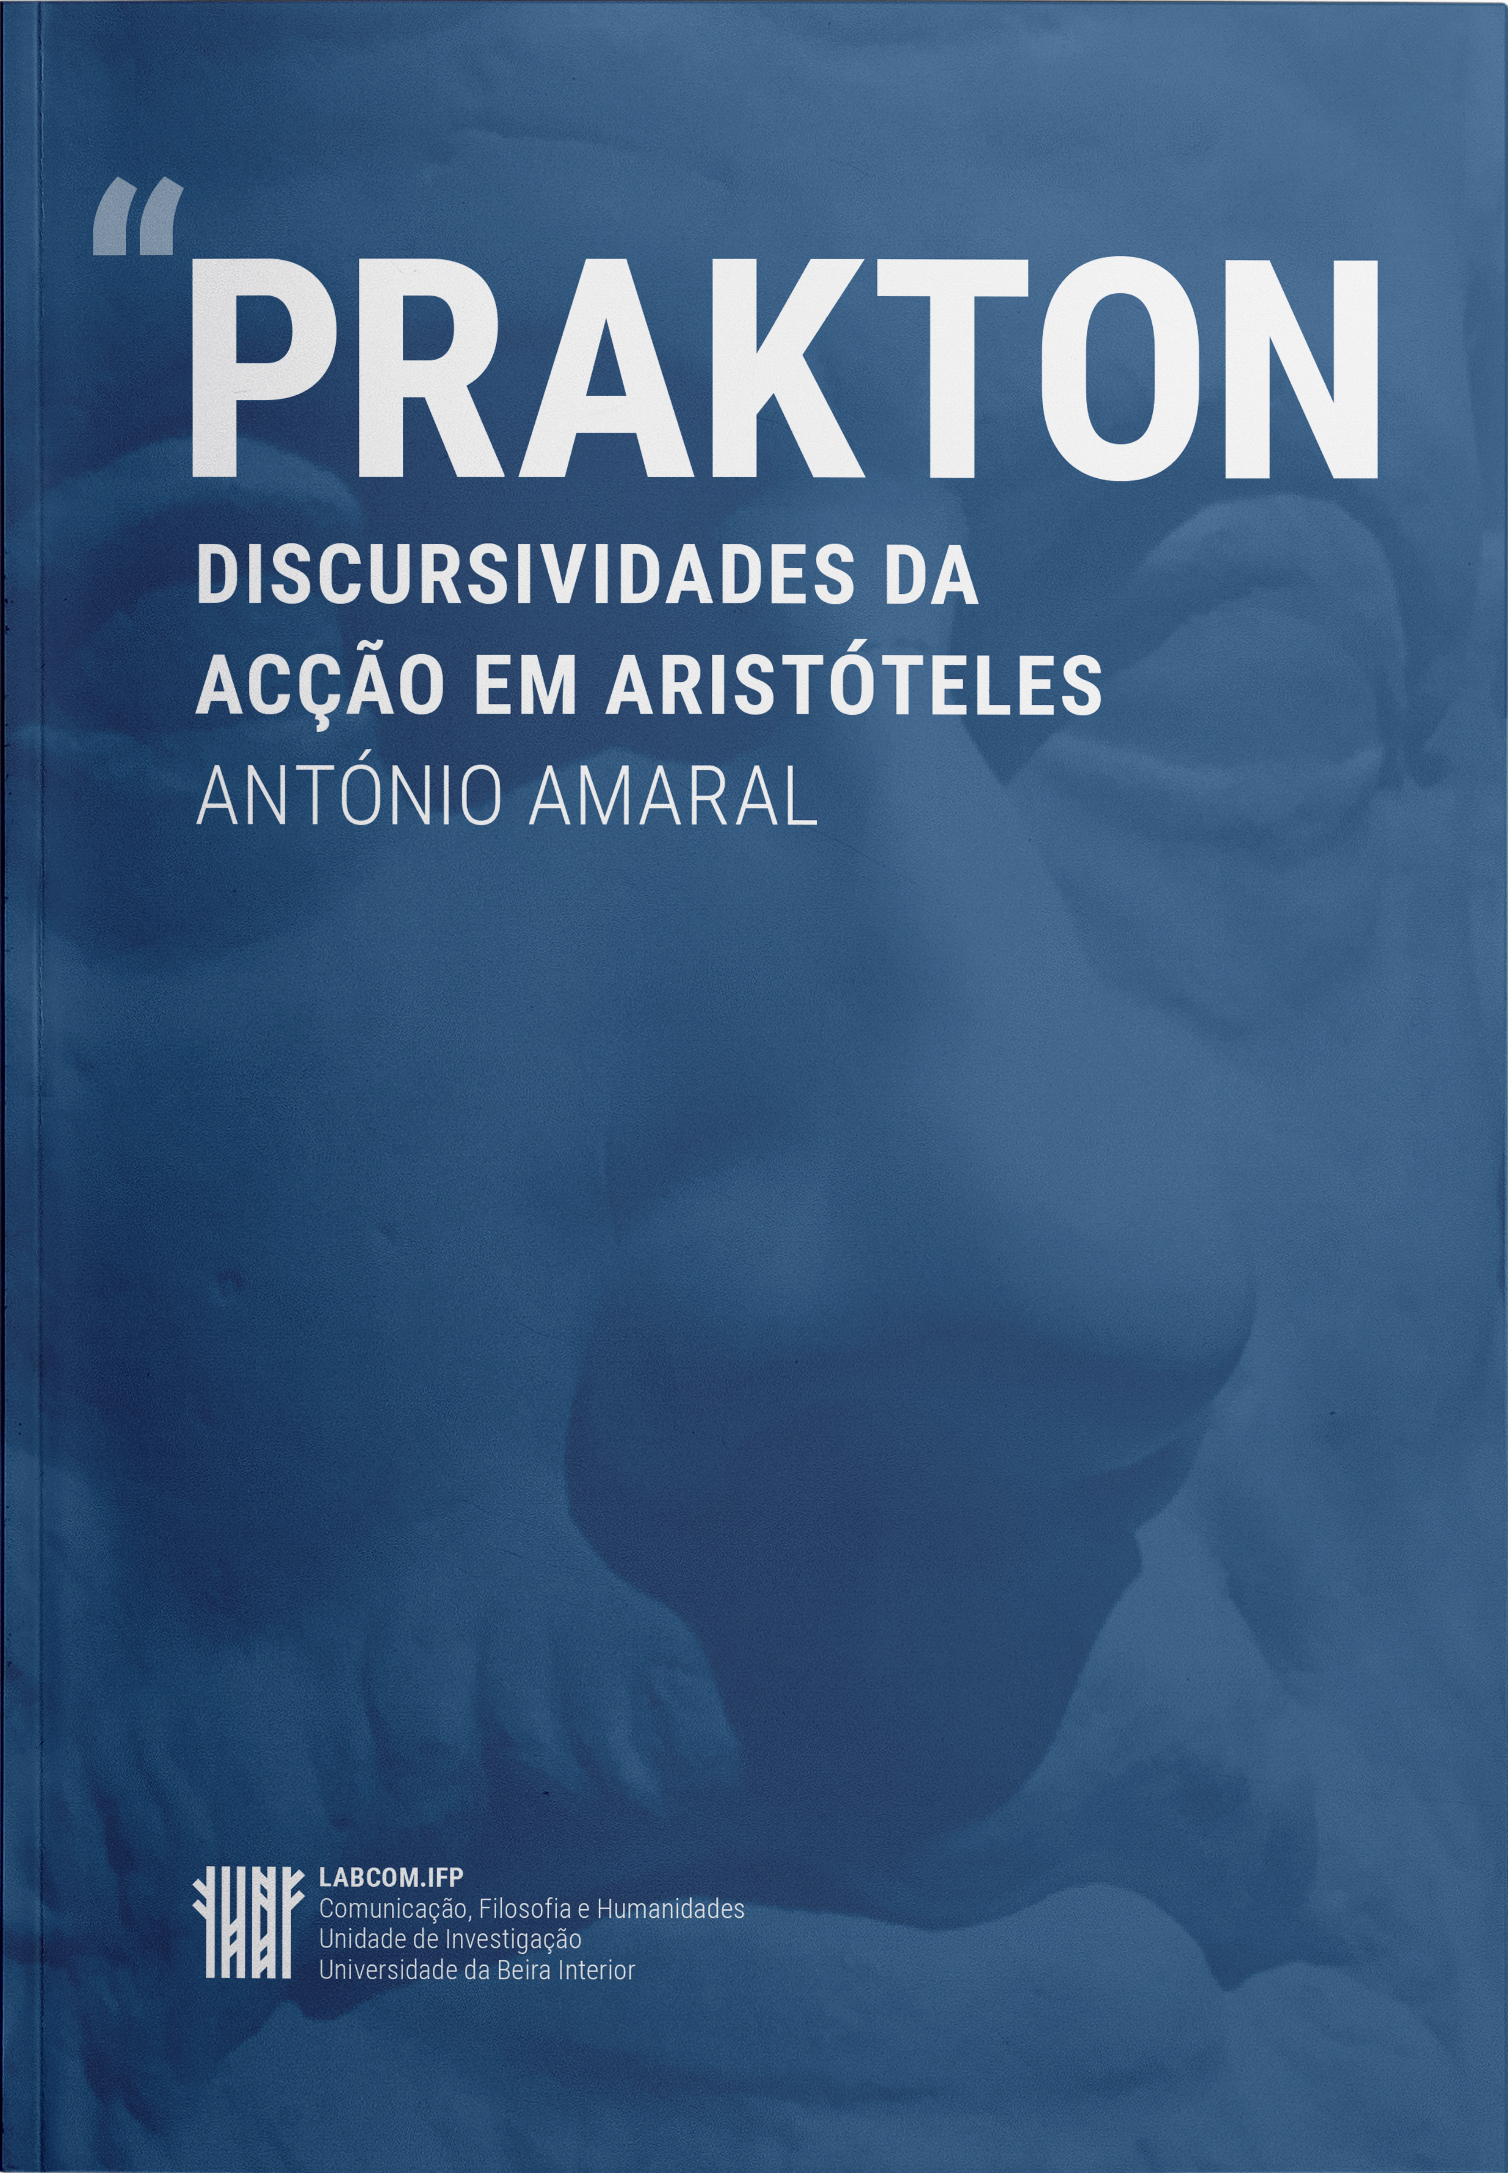 Capa: António Amaral (2019) PRAKTON: Discursividades da Acção em Aristóteles. Communication  +  Philosophy  +  Humanities. .